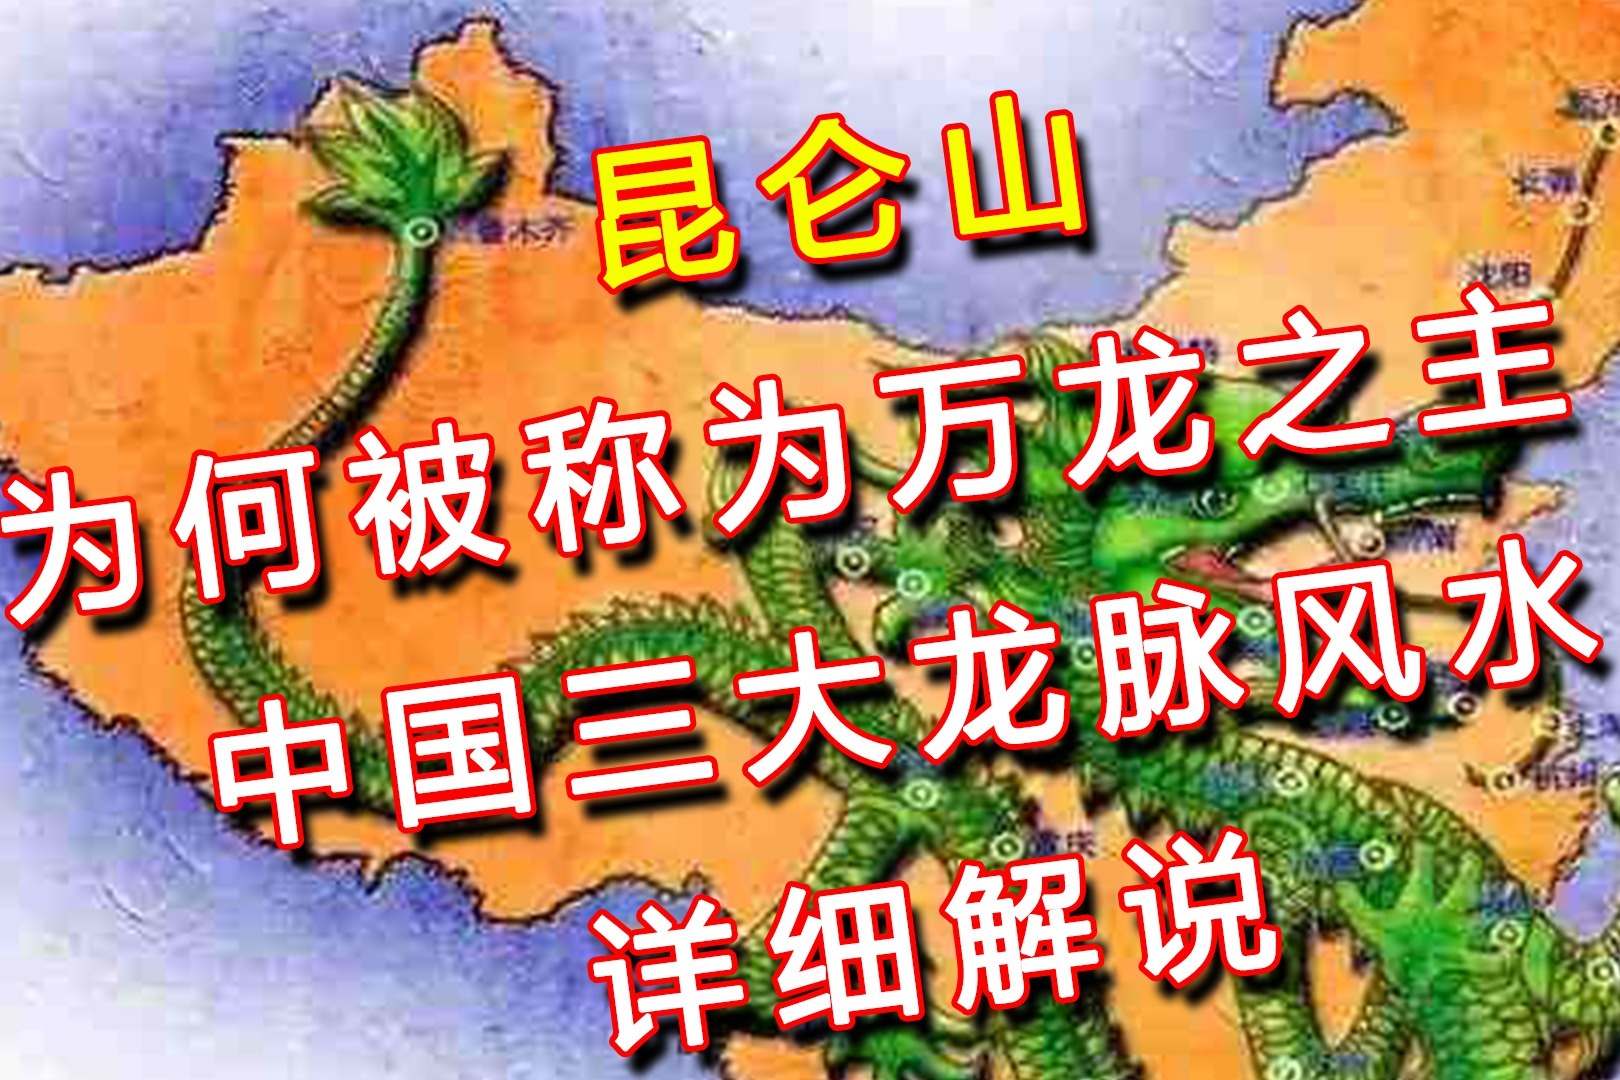 昆仑山为何被称为万龙之主?中国三大龙脉风水图详解!